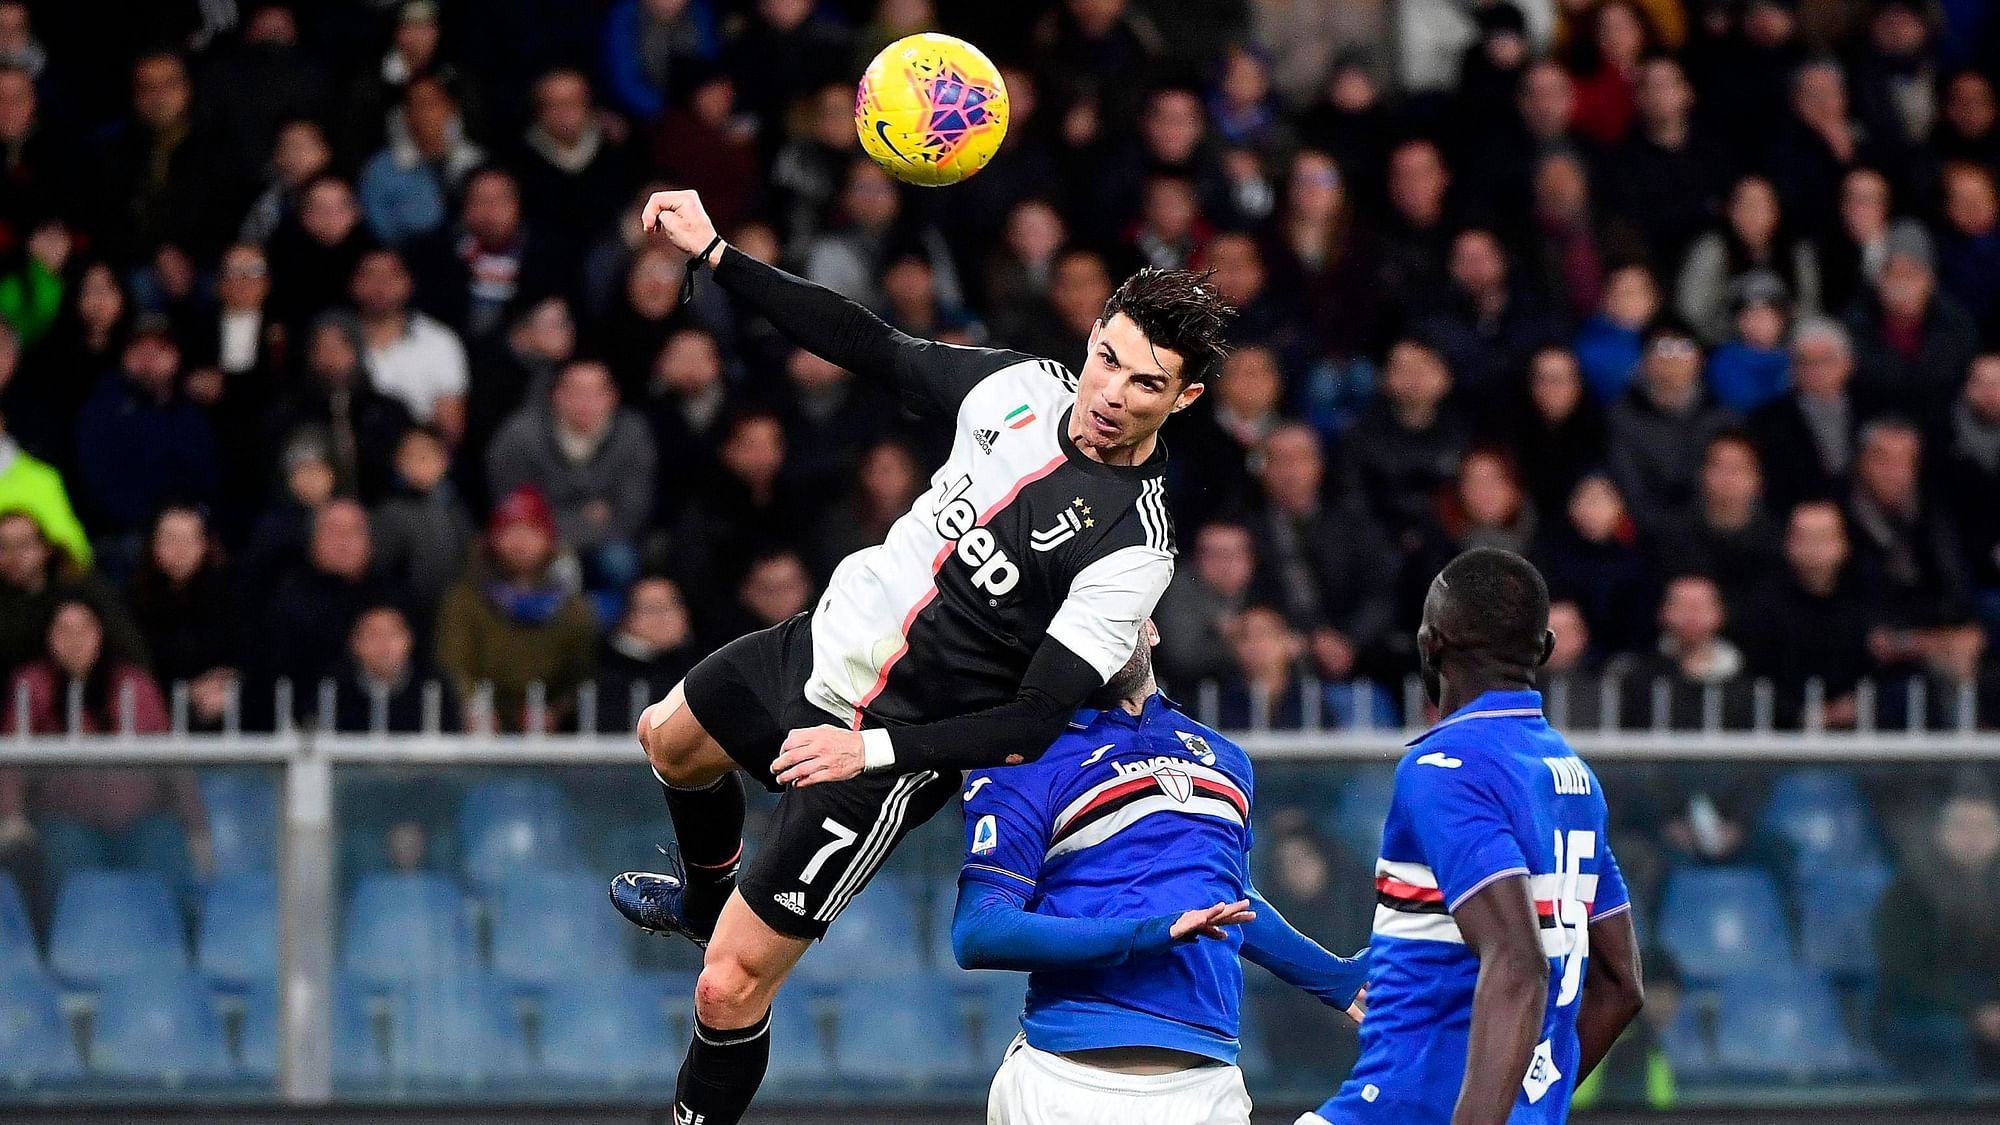 Juventus’ Cristiano Ronaldo (L) scores the 1-2 goal during the Italian Serie A soccer match UC Sampdoria vs Juventus FC at Luigi Ferraris stadium in Genoa, Italy, 18 December 2019.&nbsp;